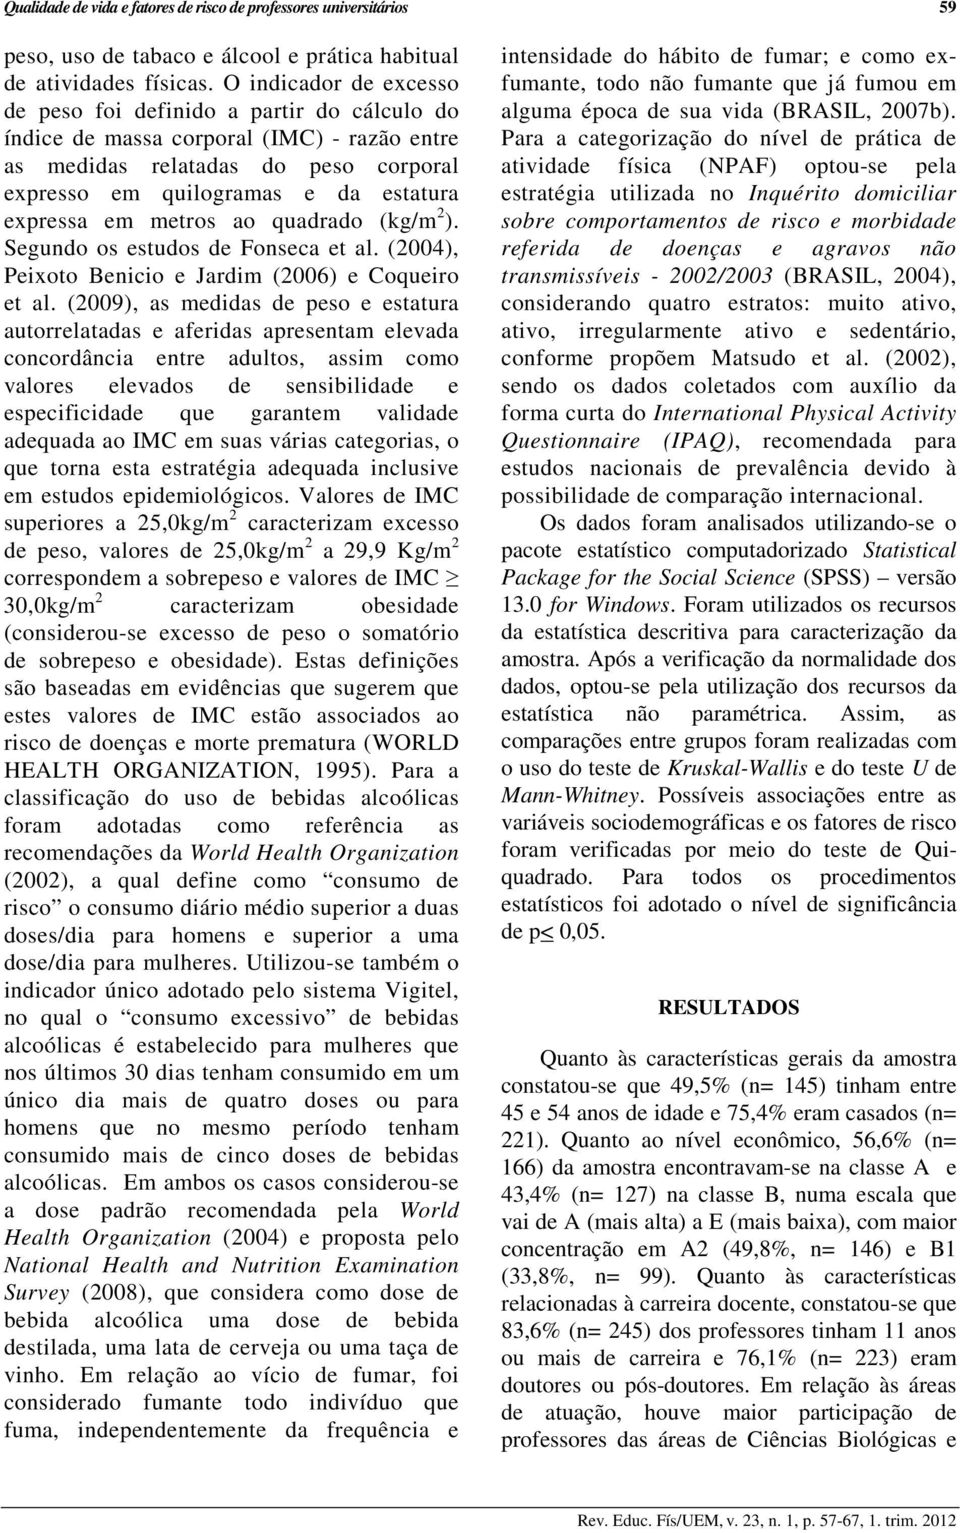 metros ao quadrado (kg/m 2 ). Segundo os estudos de Fonseca et al. (2004), Peixoto Benicio e Jardim (2006) e Coqueiro et al.